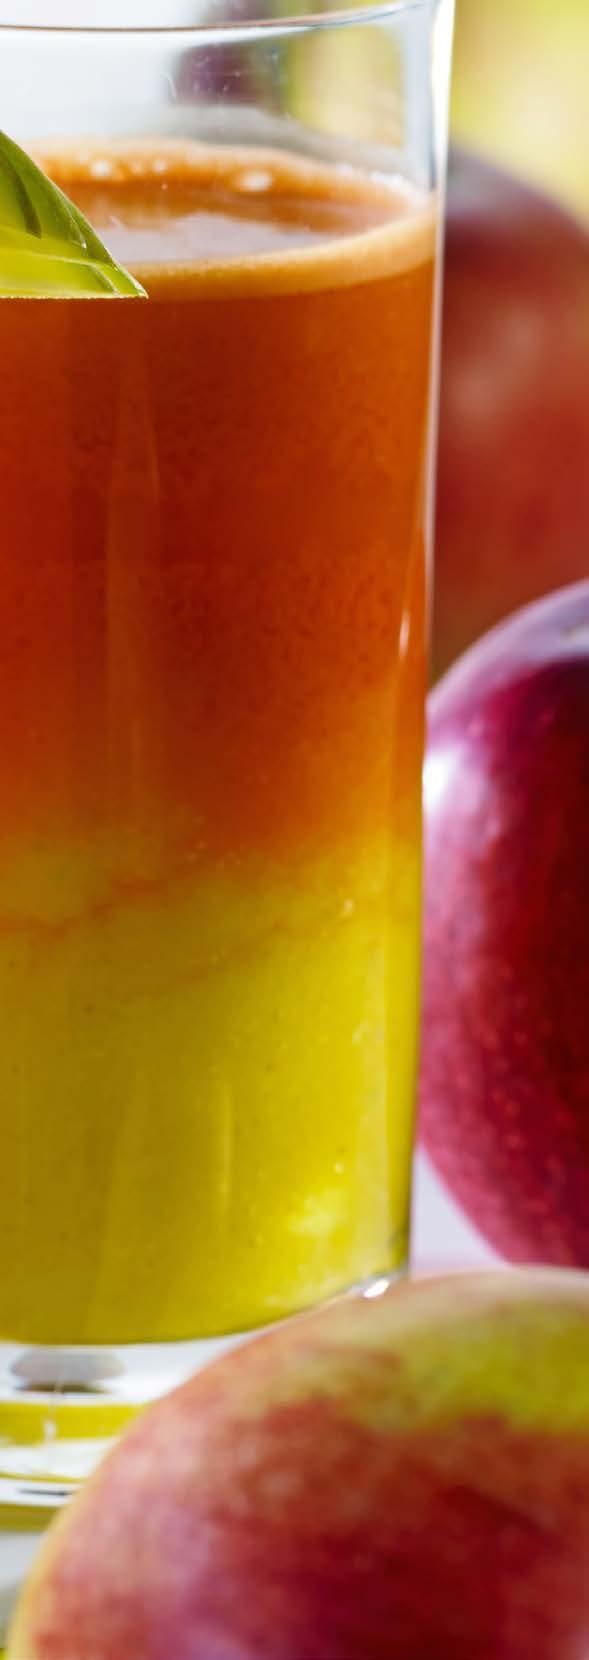 Sok karotenowy 1 SKŁADNIKI: 2 porcje 400 g marchwi 1/2 mango 1 jabłko KOKTAJL OWOCOWO-WARZYWNY SPOSÓB WYKONANIA: Wszystkie składniki pokroić na mniejsze kawałki i wycisnąć z nich sok.